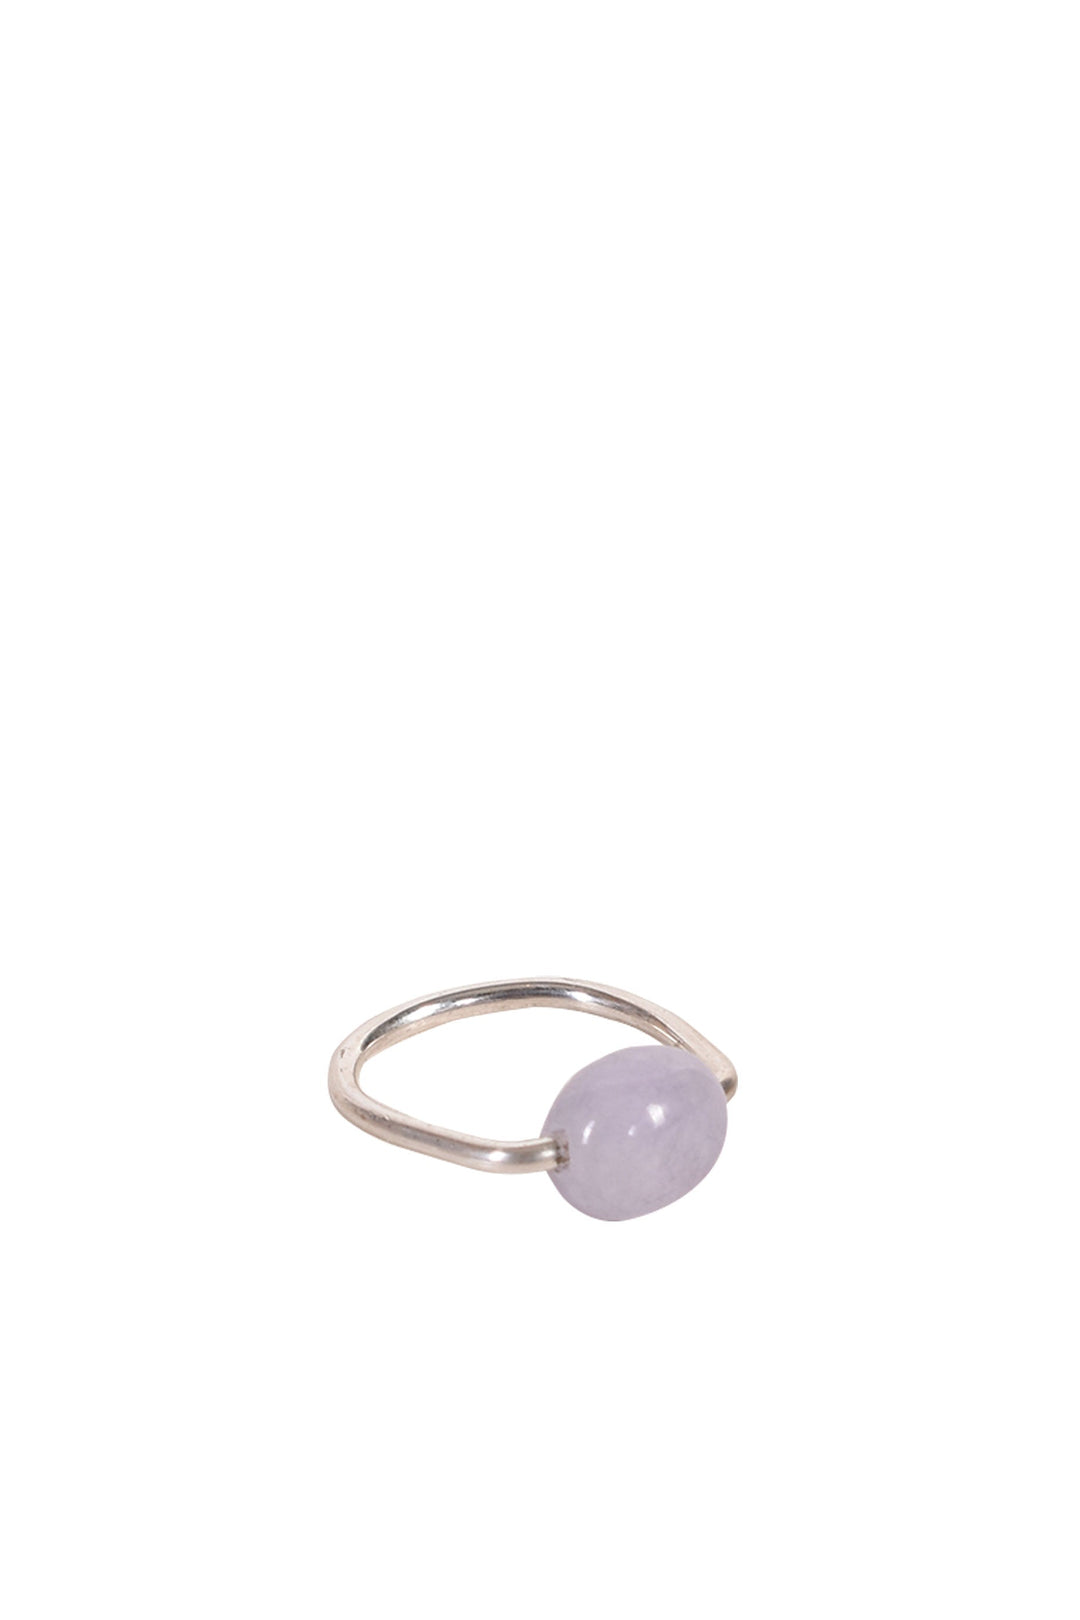 Alouette Design
 Gelati Ring - Lavender